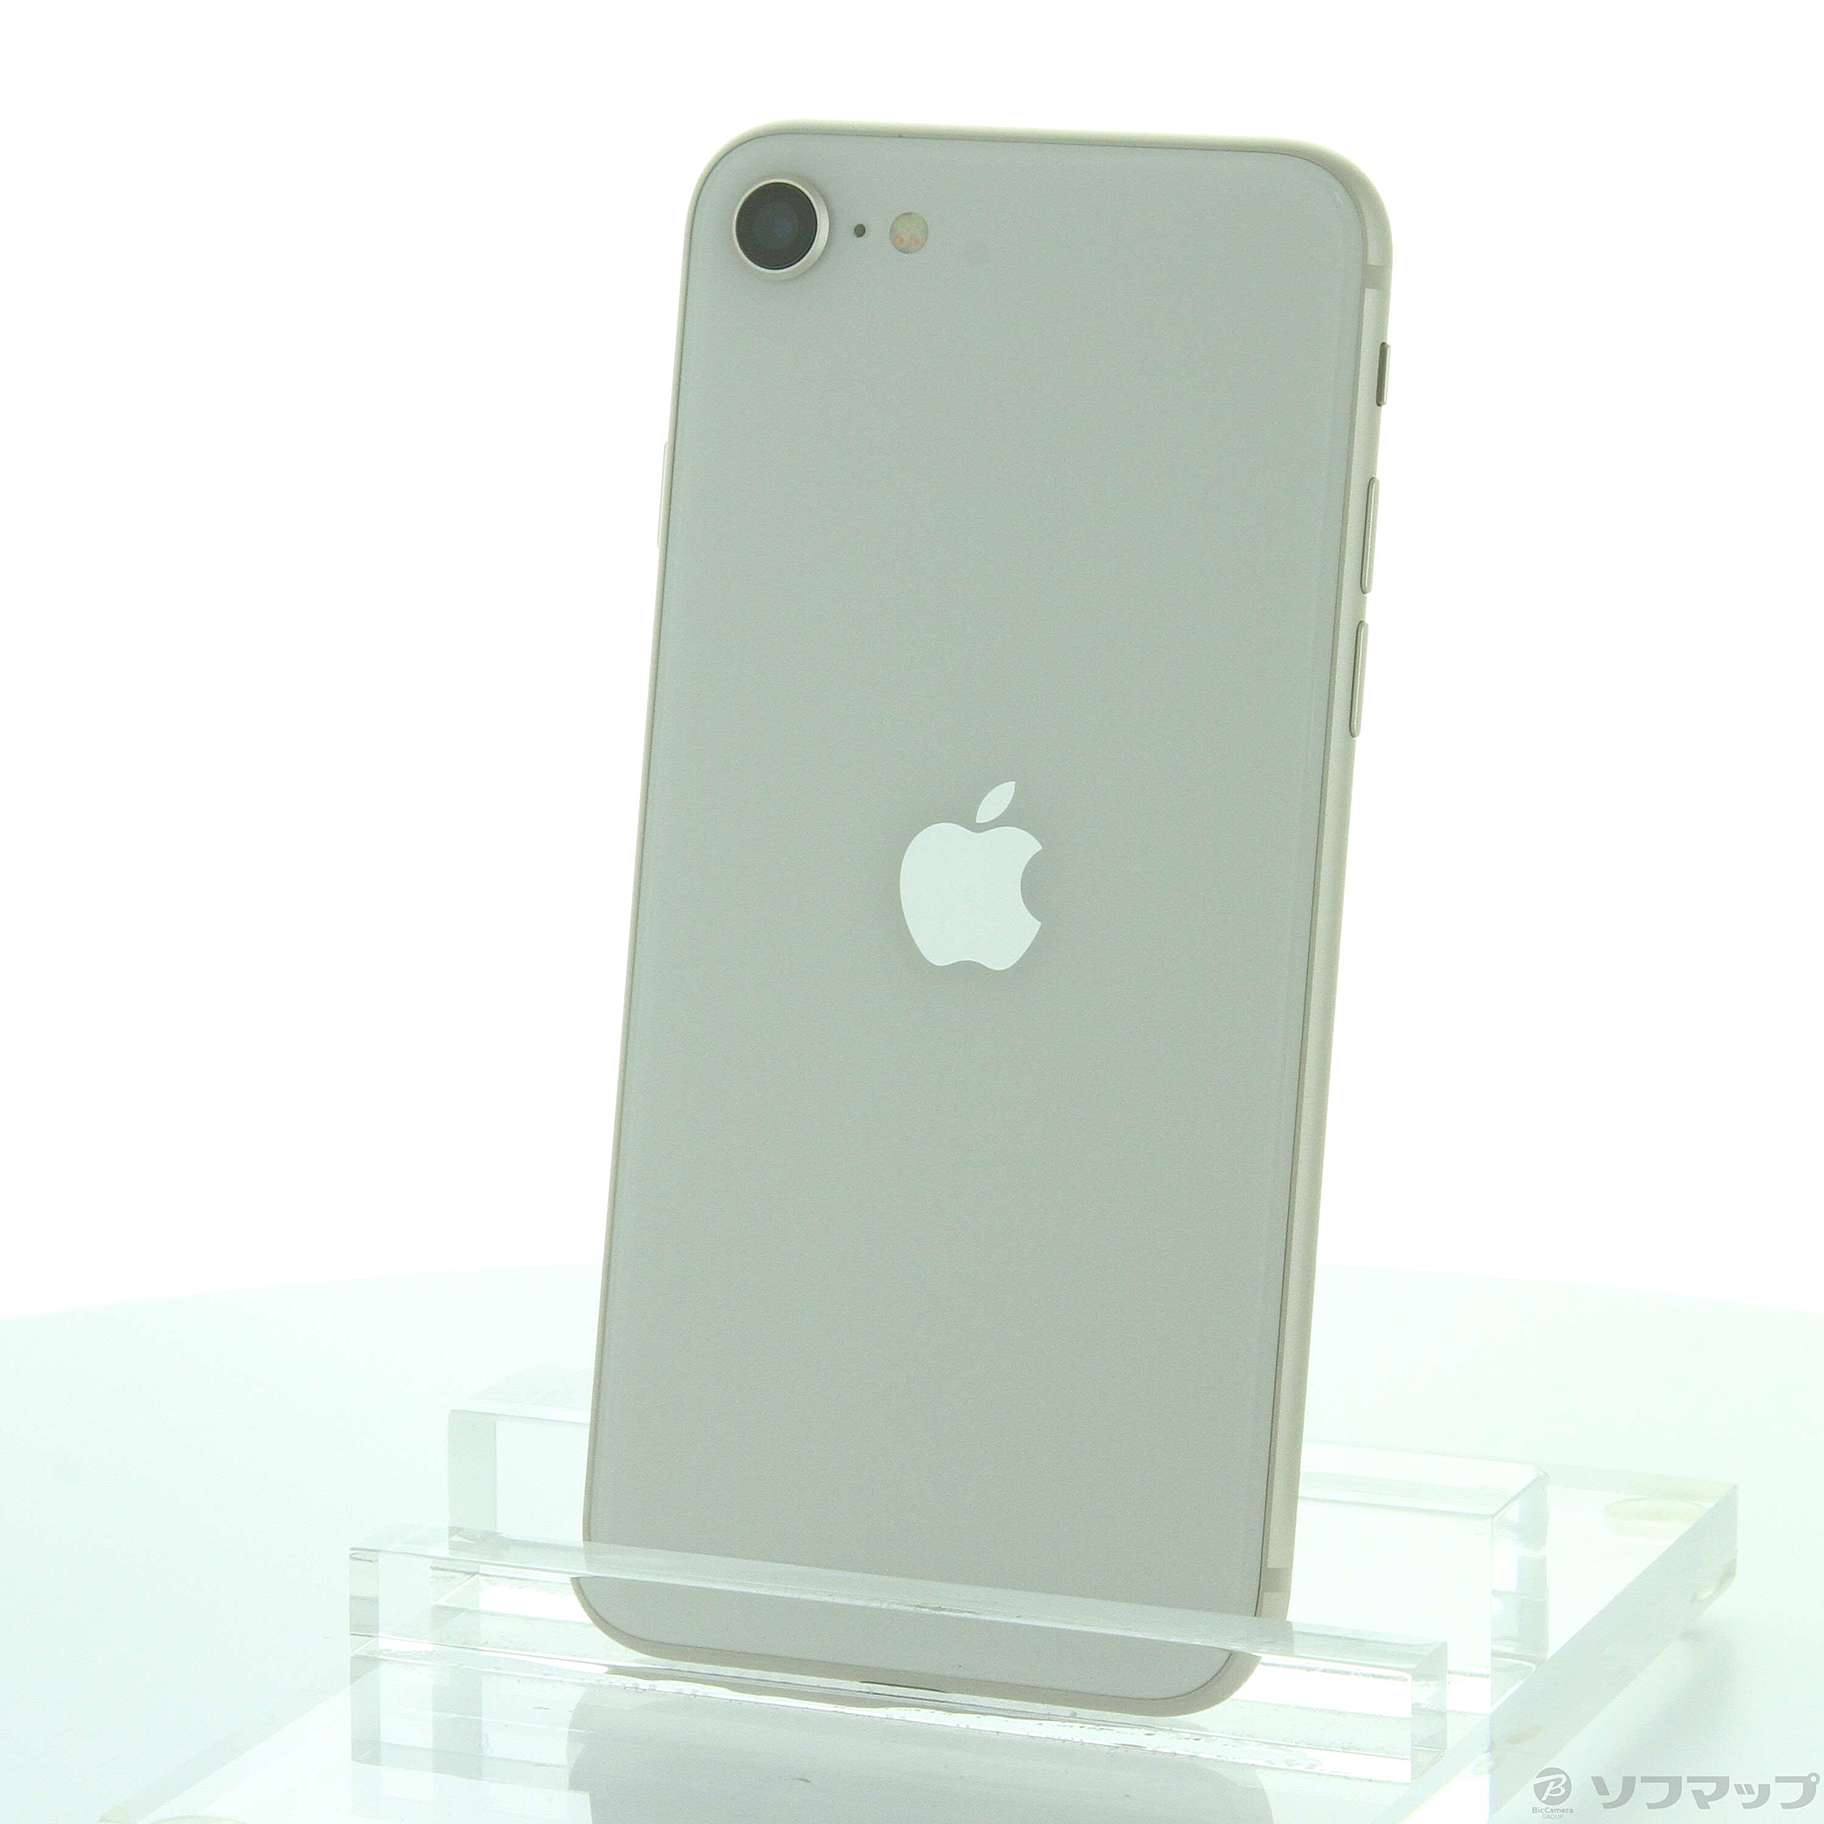 Apple iPhone SE 第3世代 128GB スターライト 未使用